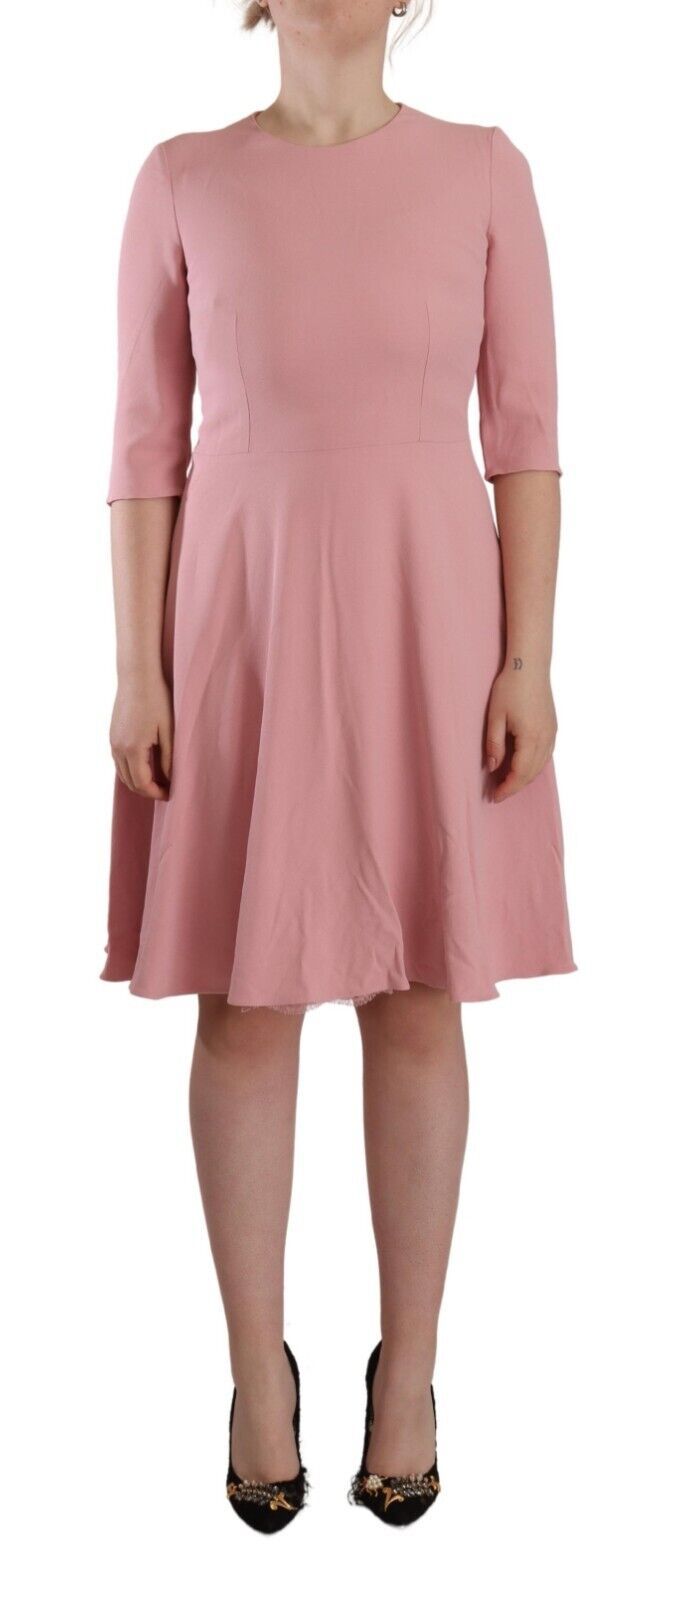 Dolce & Gabbana Pink 3/4 Sleeves Viscose Blend A-line Women's Dress